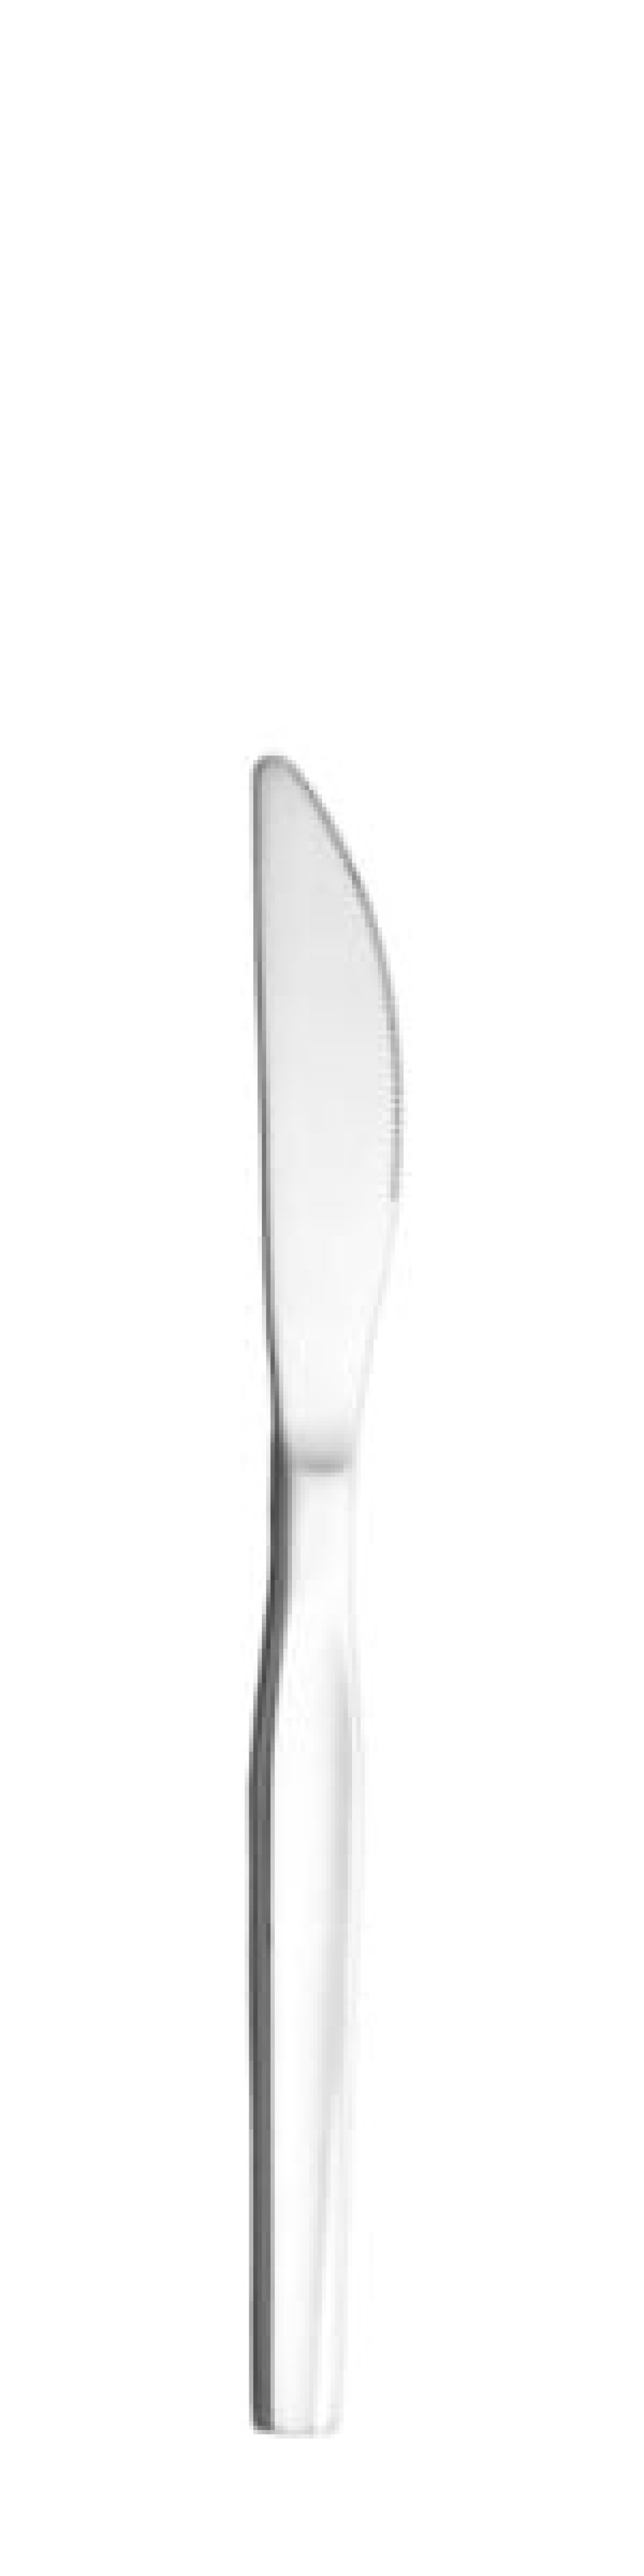 Skai Tafelmesser 208 mm - Solex in der Gruppe Tischgedeck / Besteck / Messer bei The Kitchen Lab (1284-21627)